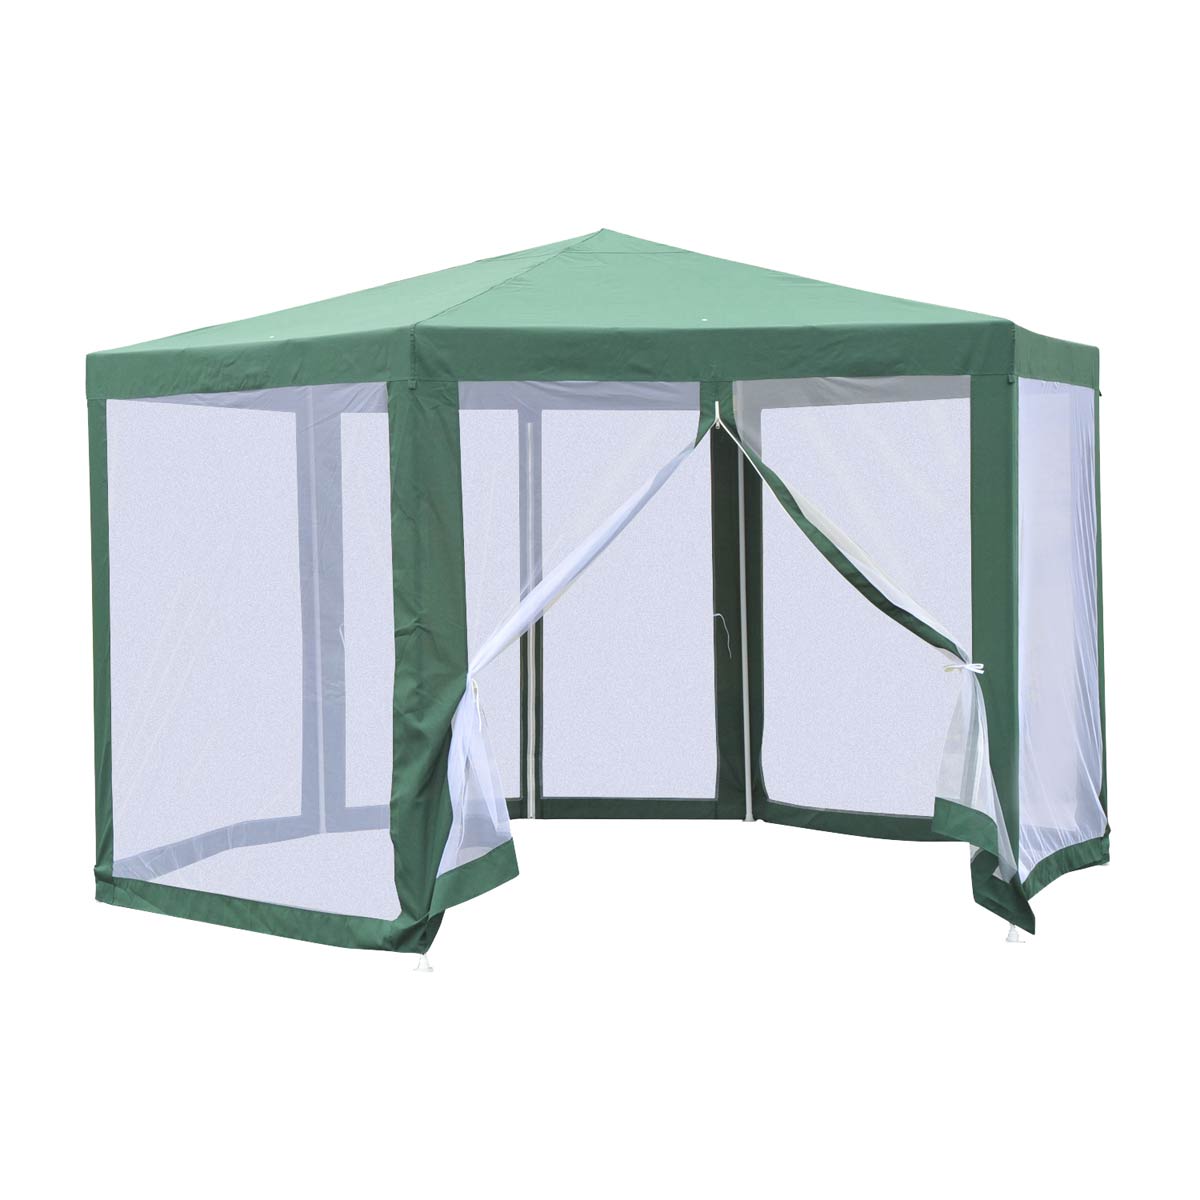 Outsunny Garden Hexagonal Gazebo Outdoor Canopy Patio Party Tent Market Marquee - Green